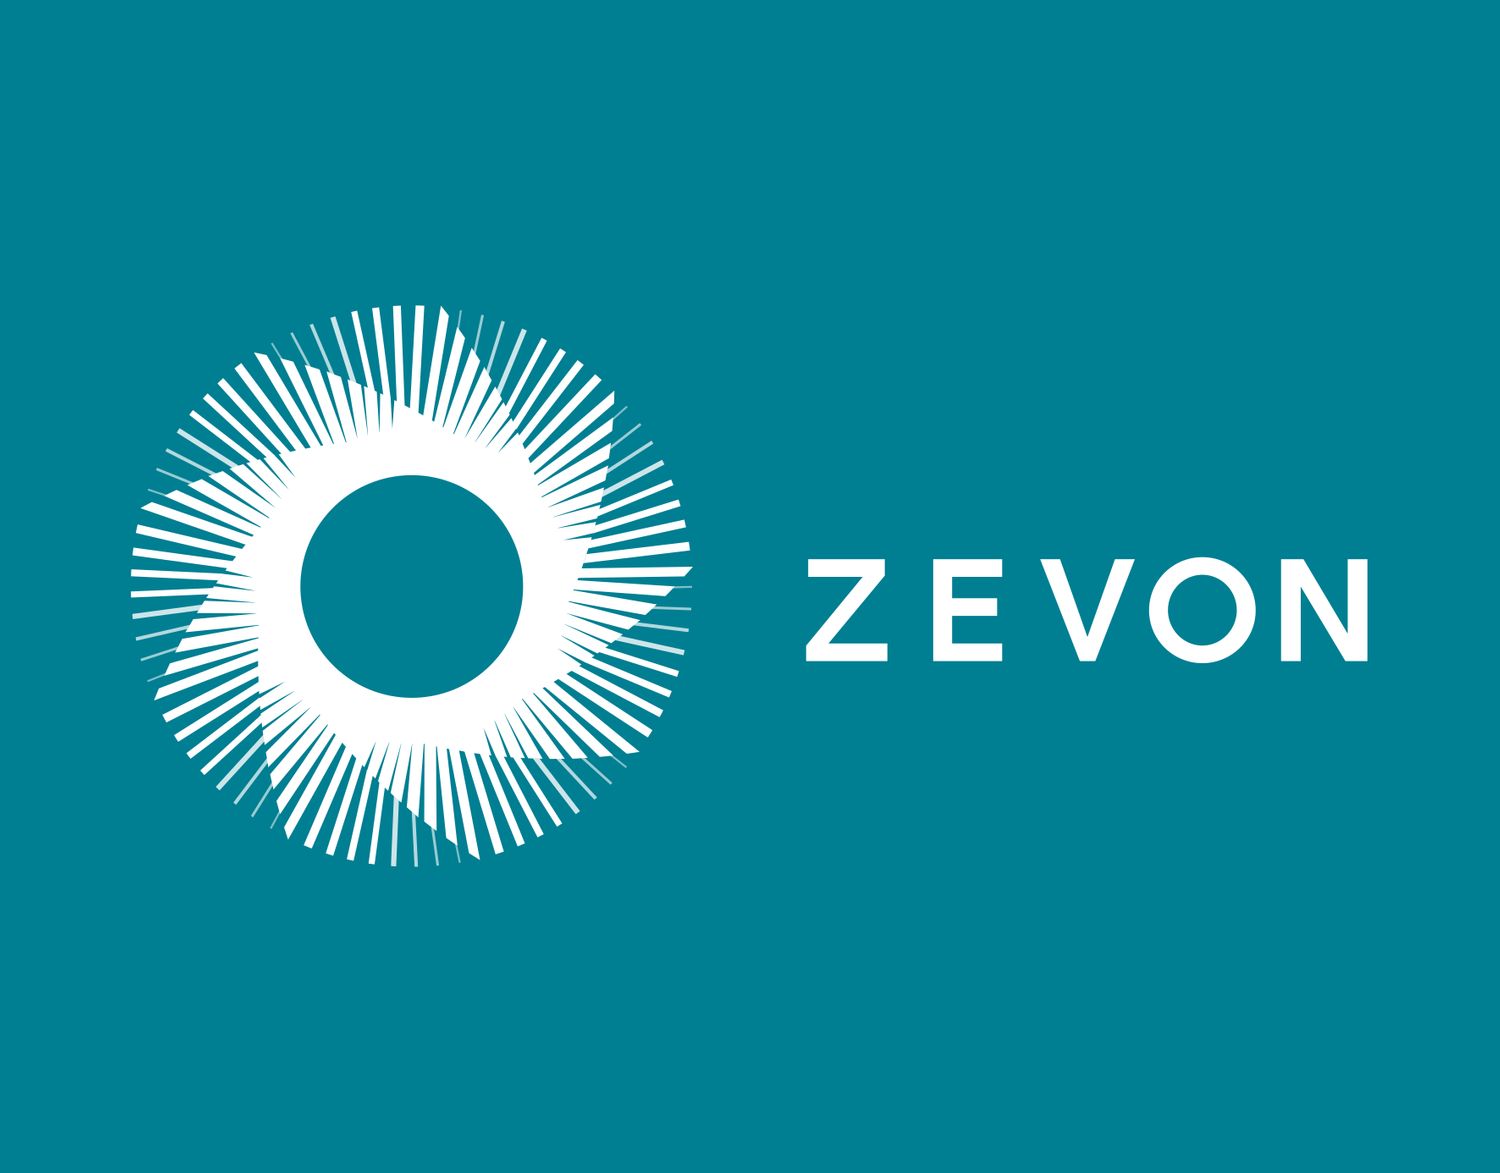 Zevon Energy